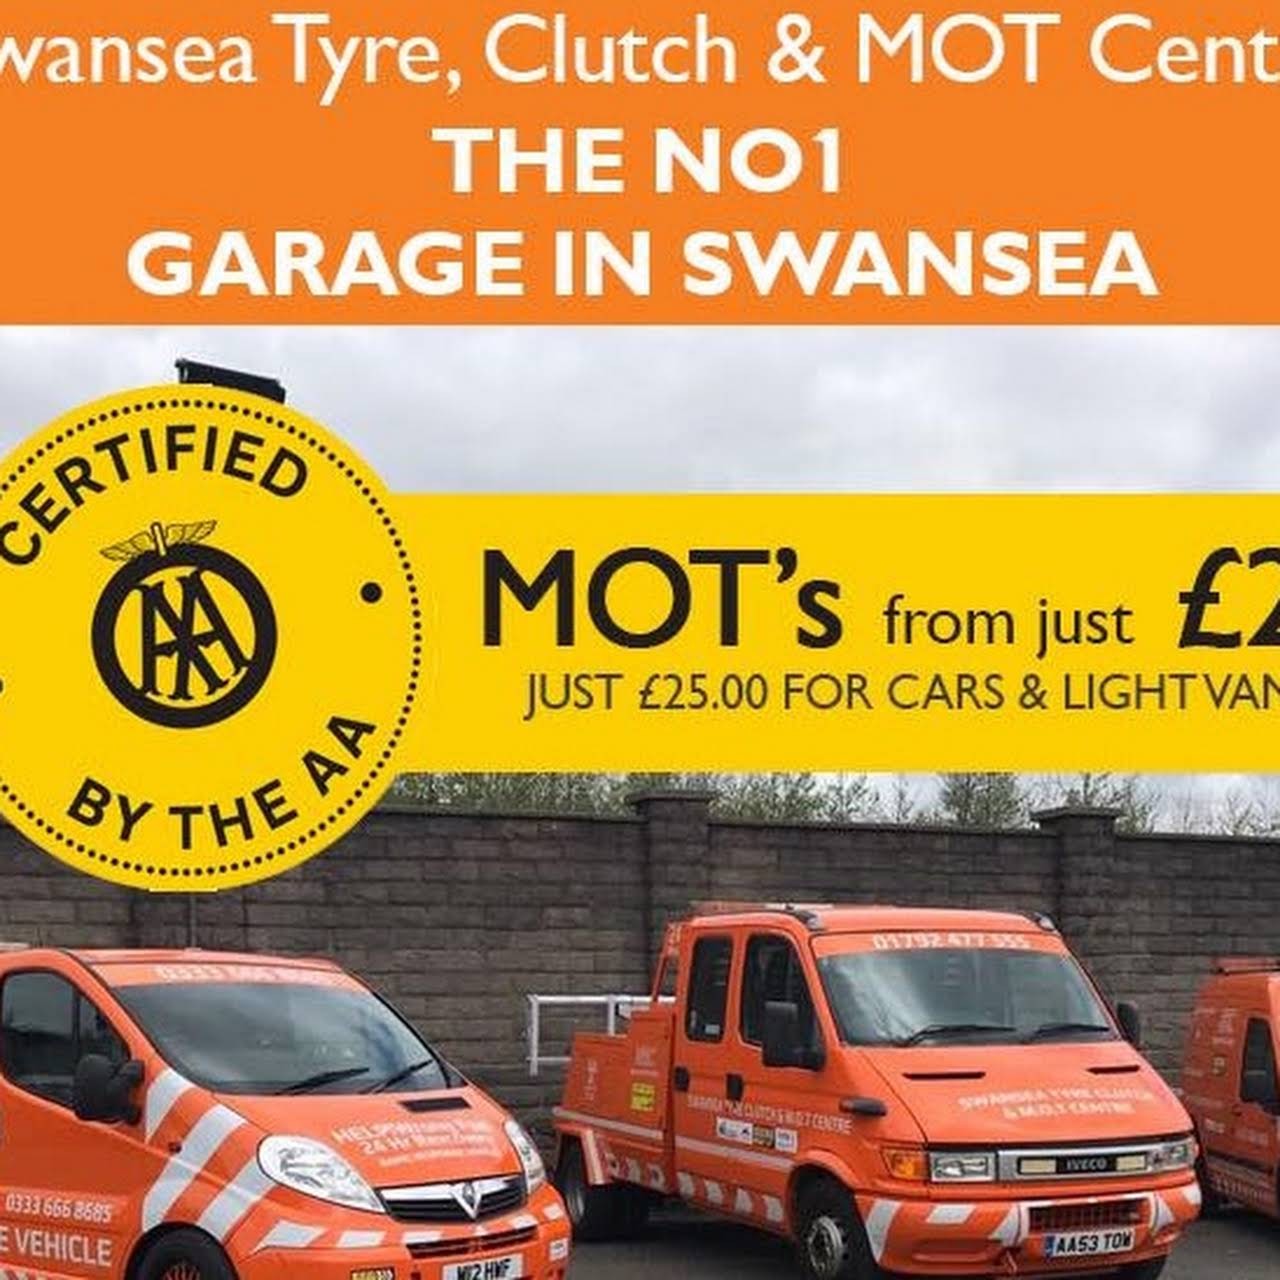 Swansea Tyre & Clutch & MOT Centre logo